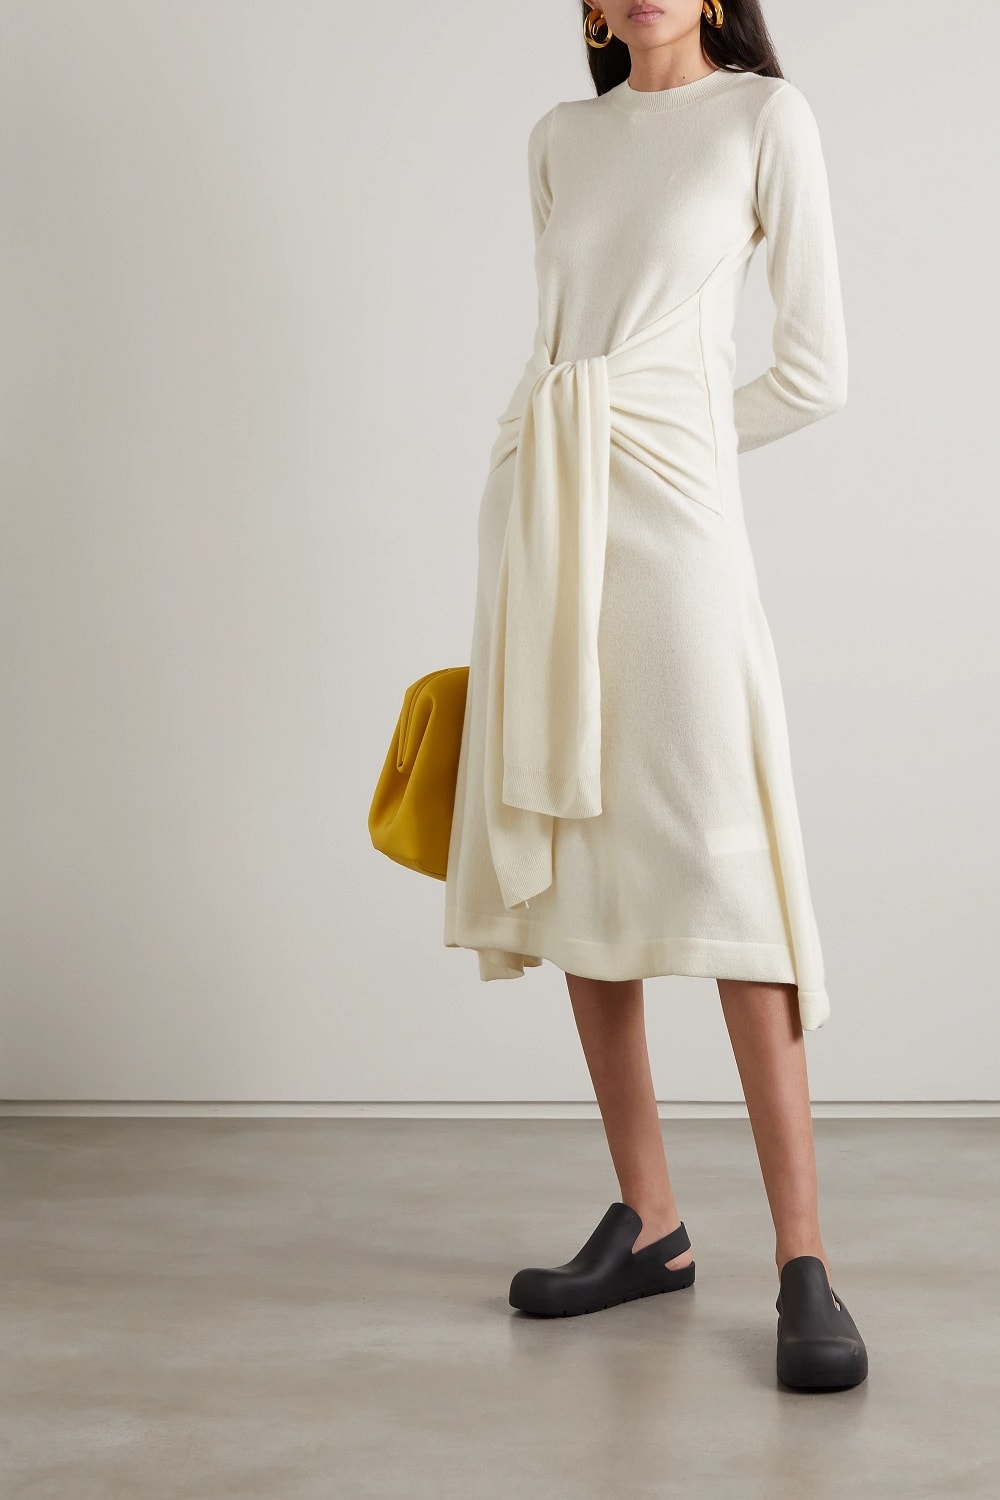 Pulover haljine u 33 najbolja modela za savršeni jesenski look